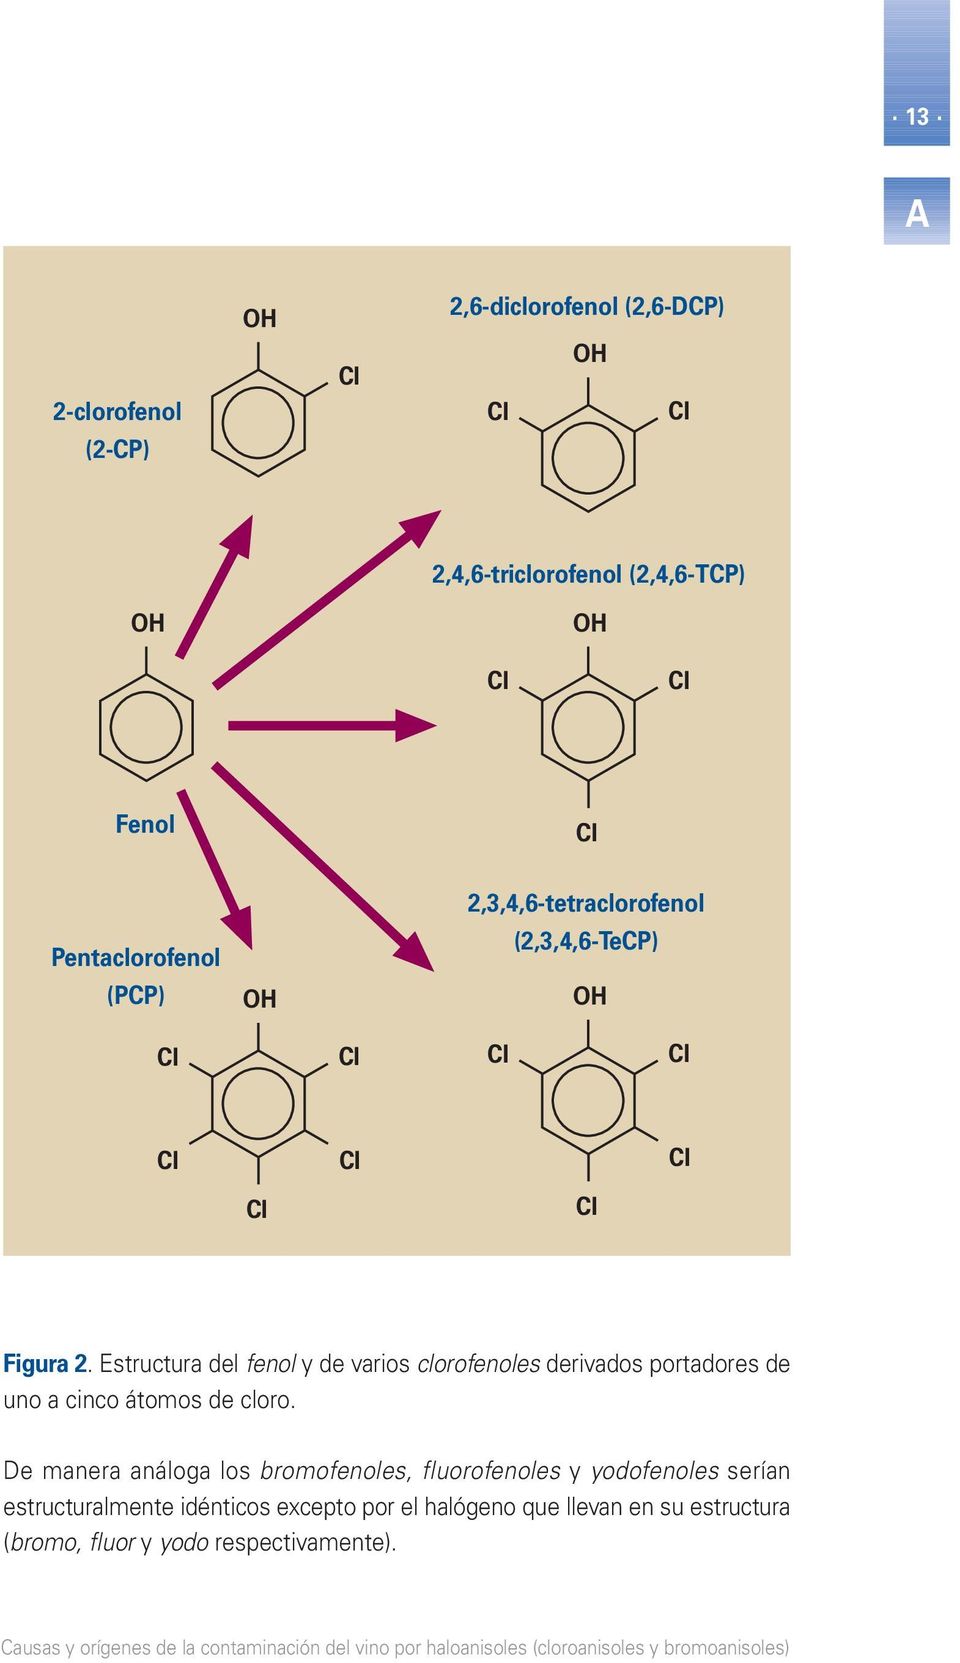 Estructura del fenol y de varios clorofenoles derivados portadores de uno a cinco átomos de cloro.